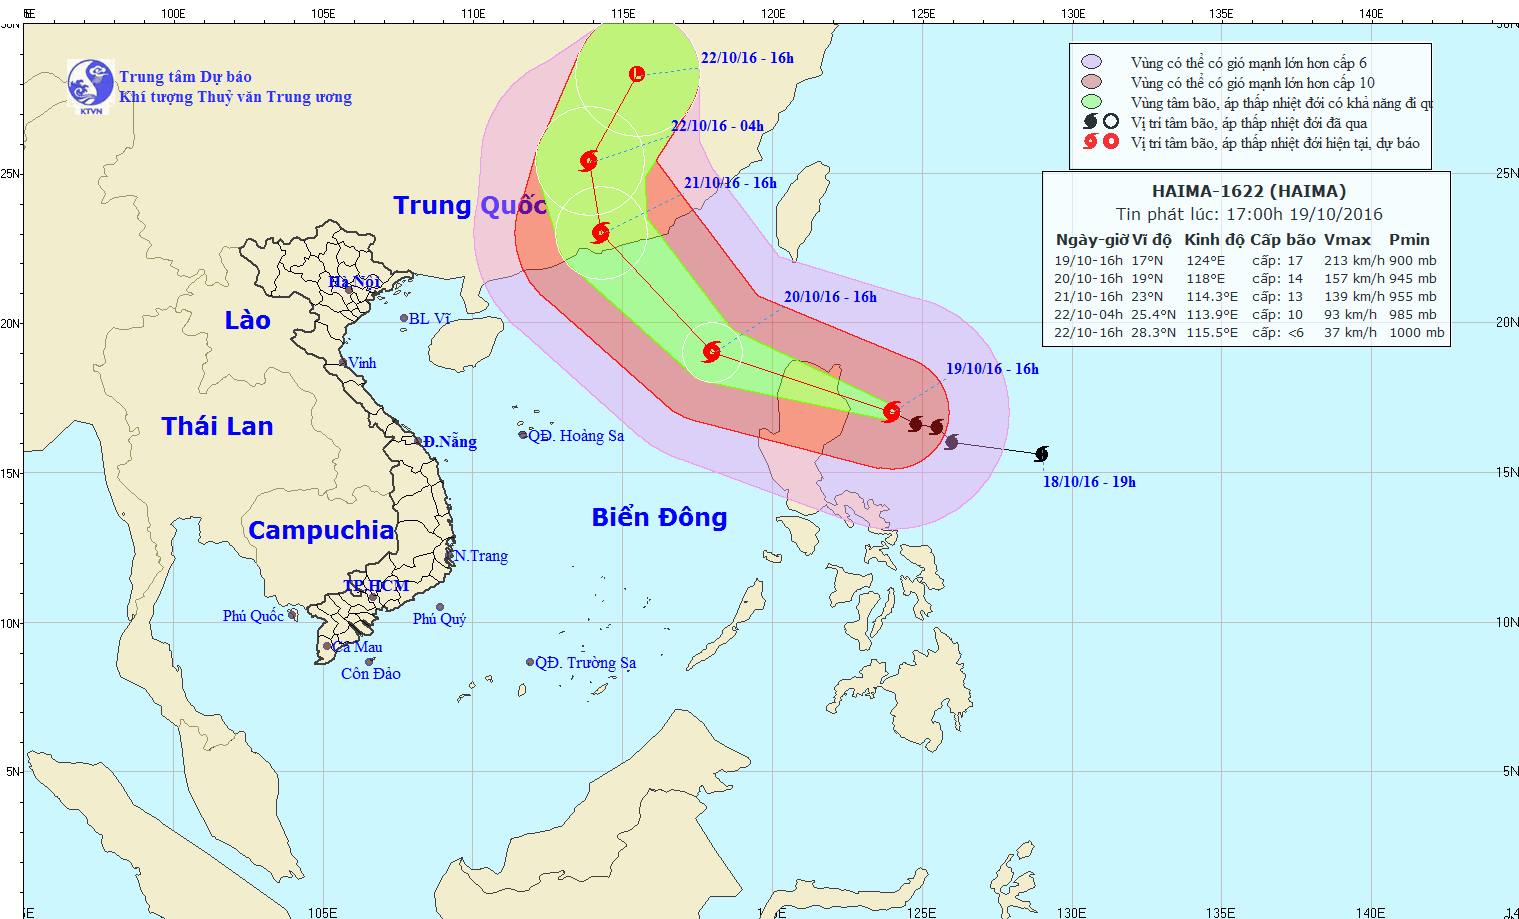 Tin cuối cùng về cơn bão số 7 - Xuất hiện bão gần biển Đông (siêu bão HAIMA)